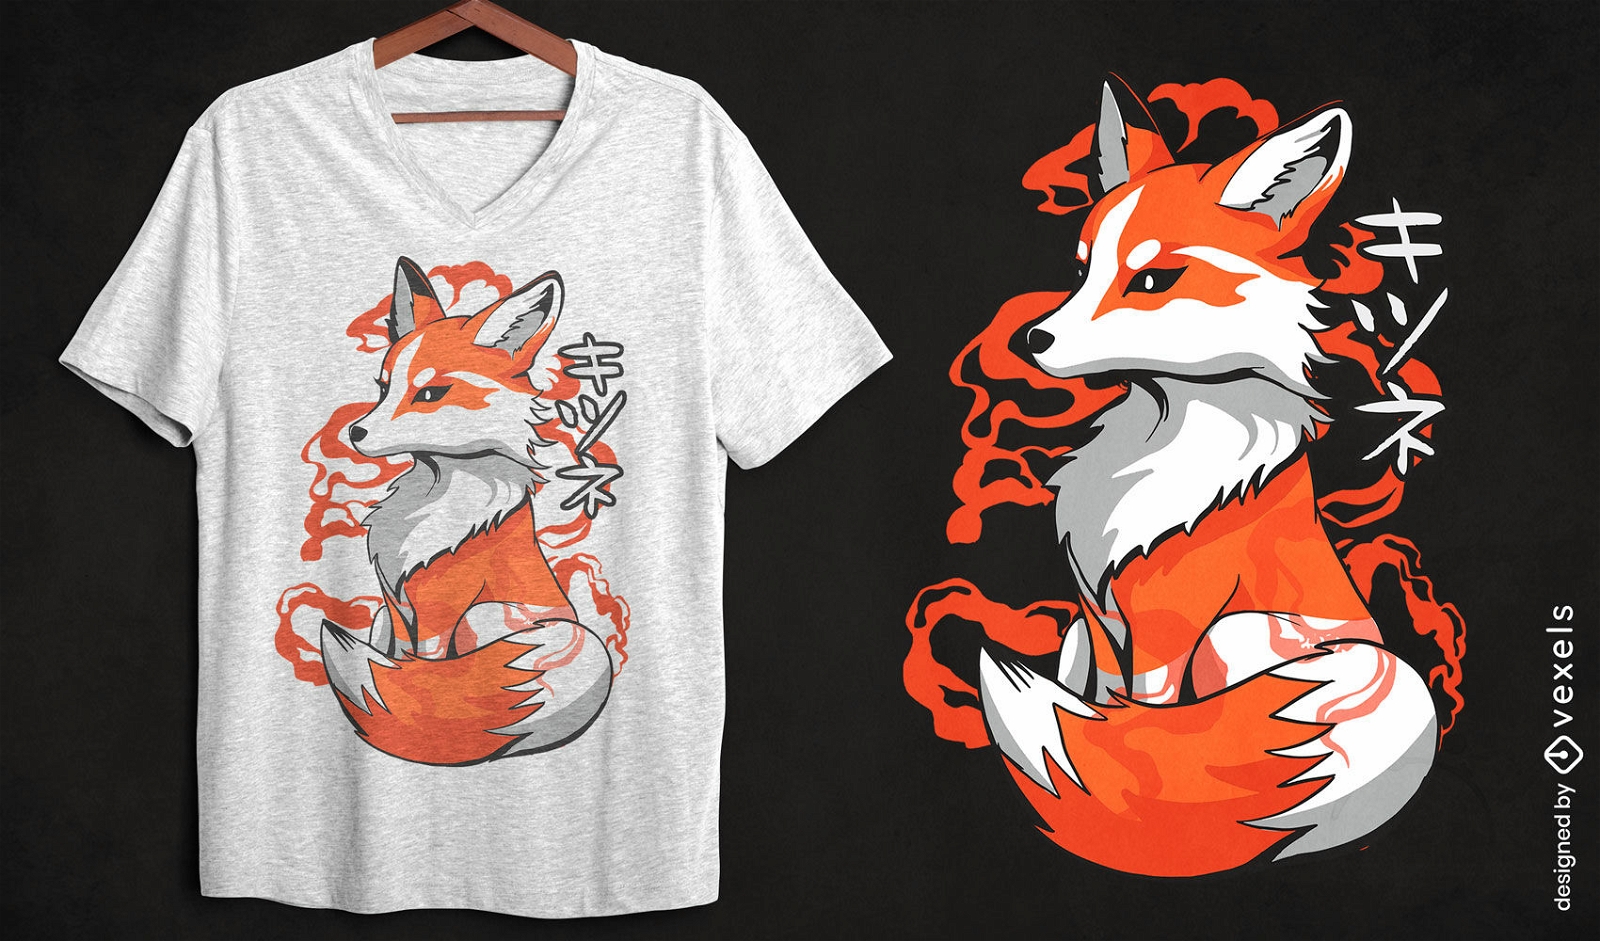 Diseño artístico de camiseta de zorro japonés.